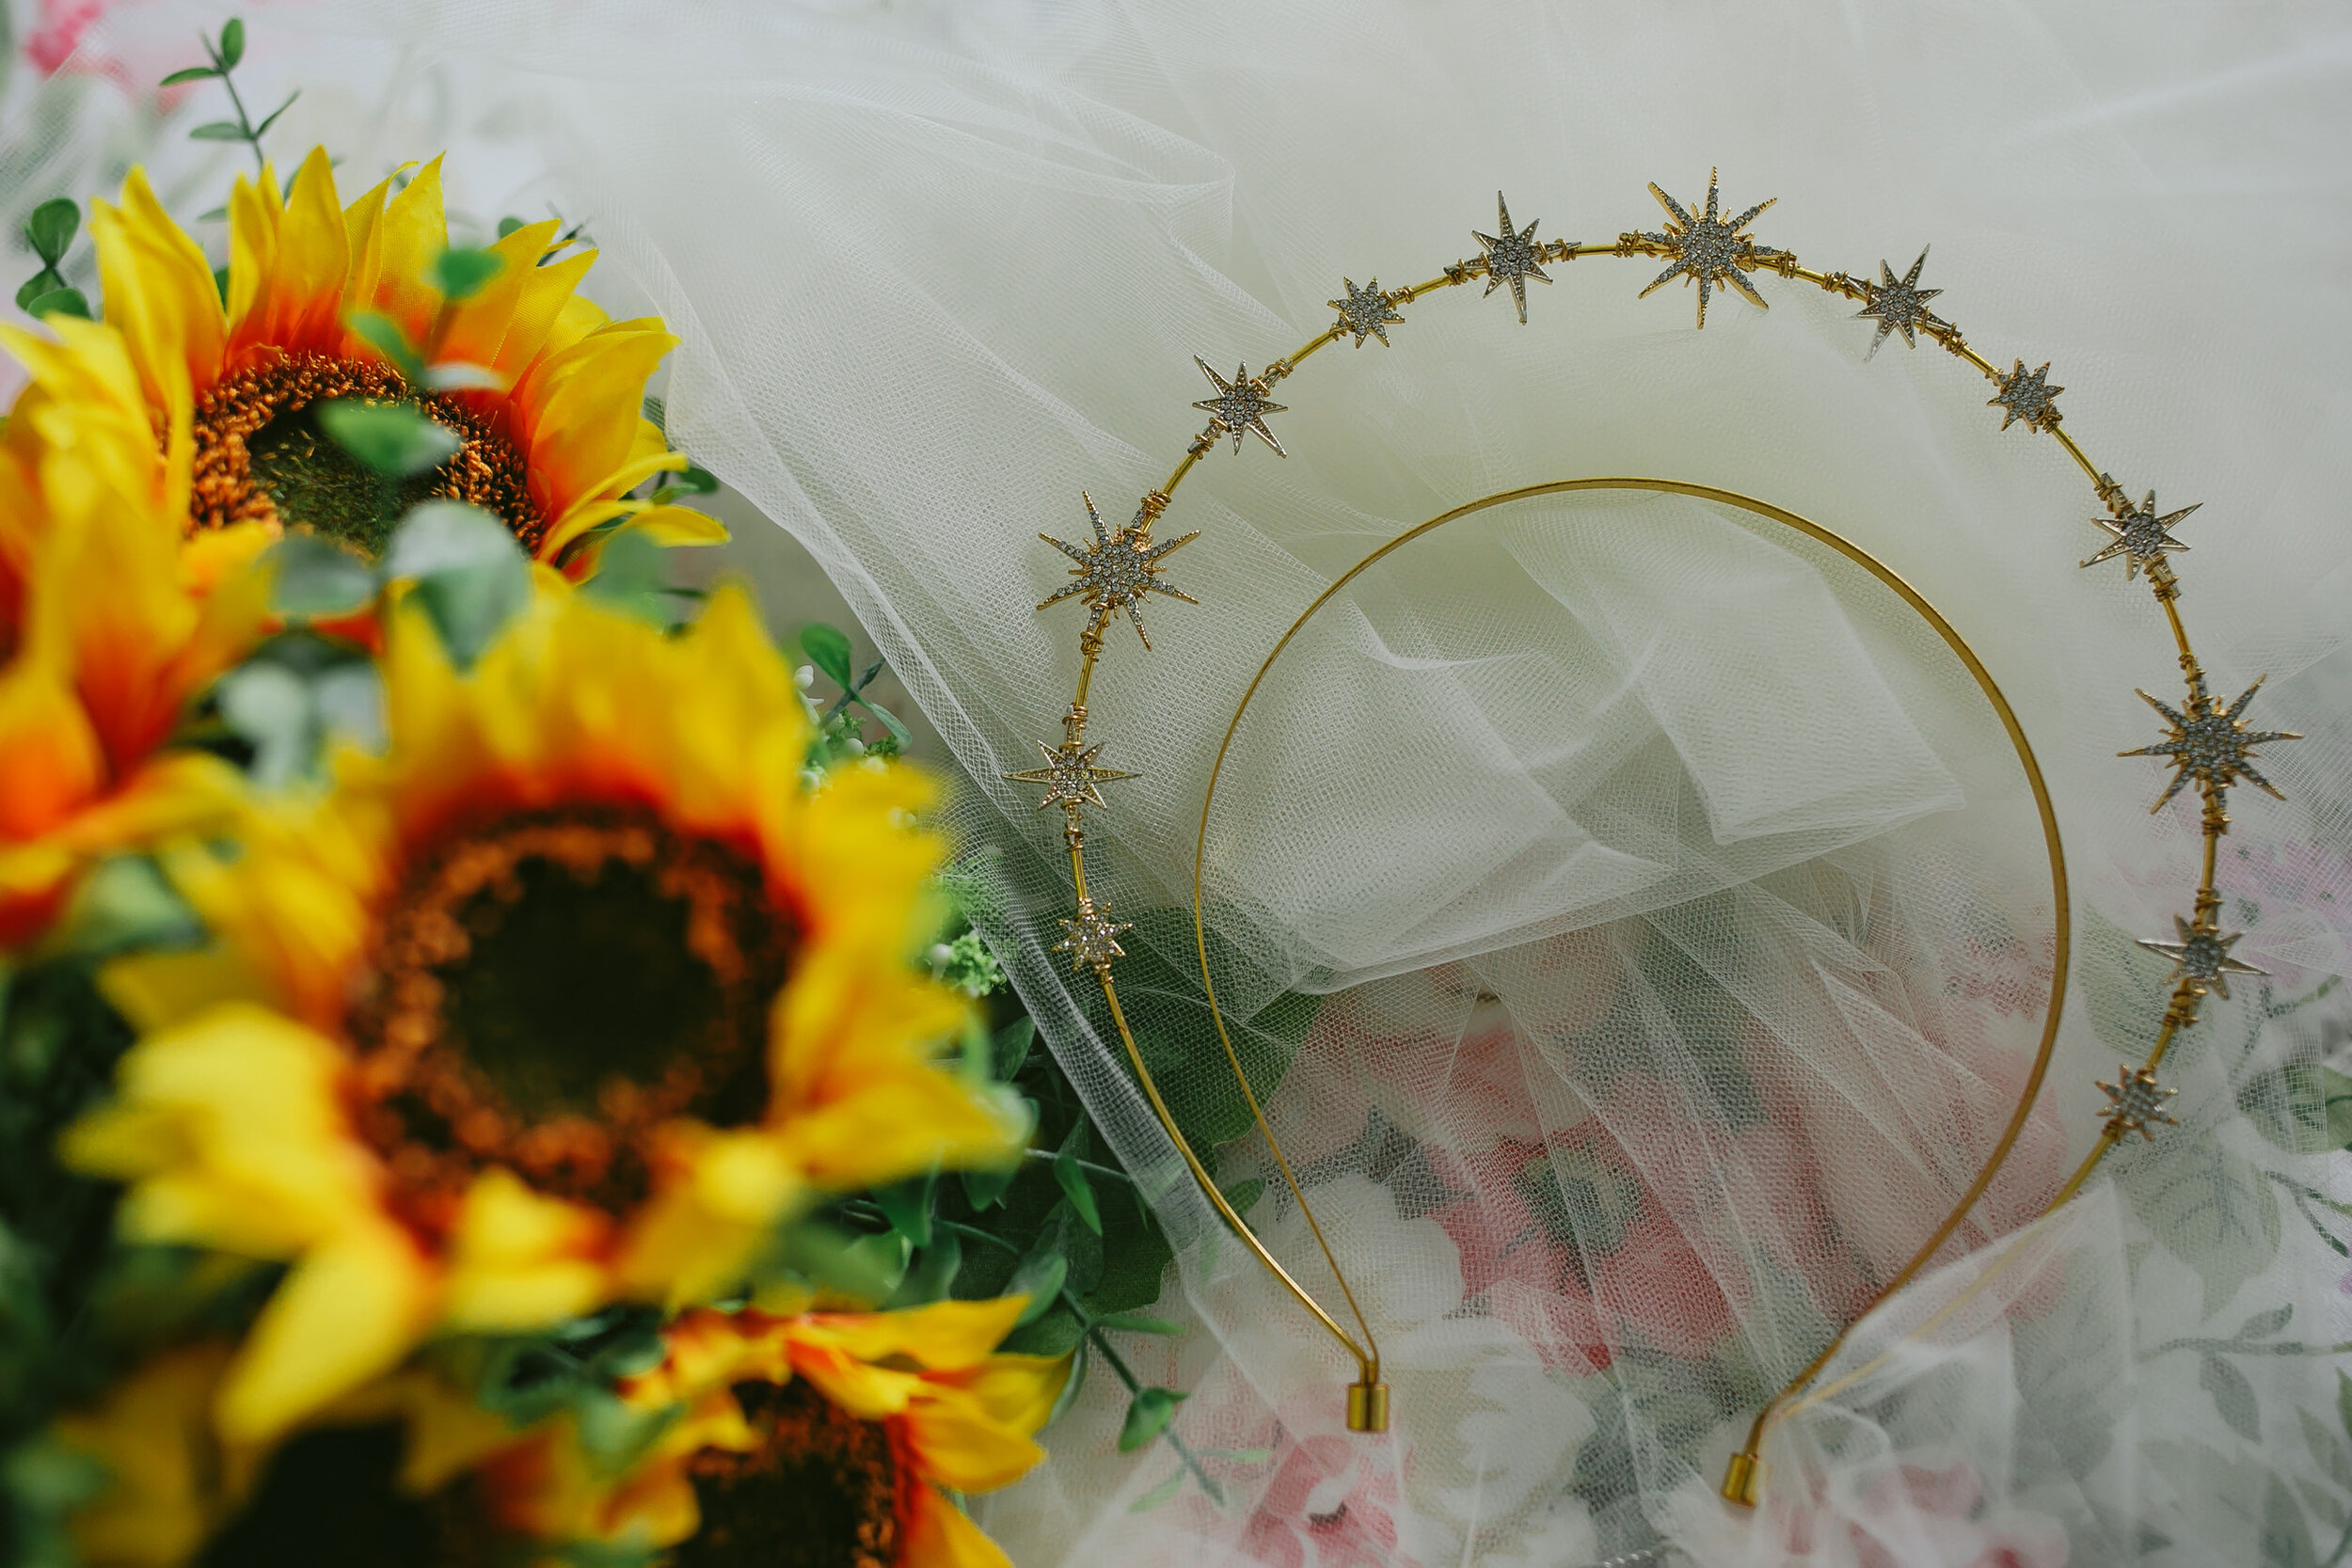 Sunflower-Bouquet-Gold-Star-Crown-Wedding-Day-Details-Homestead-Florida